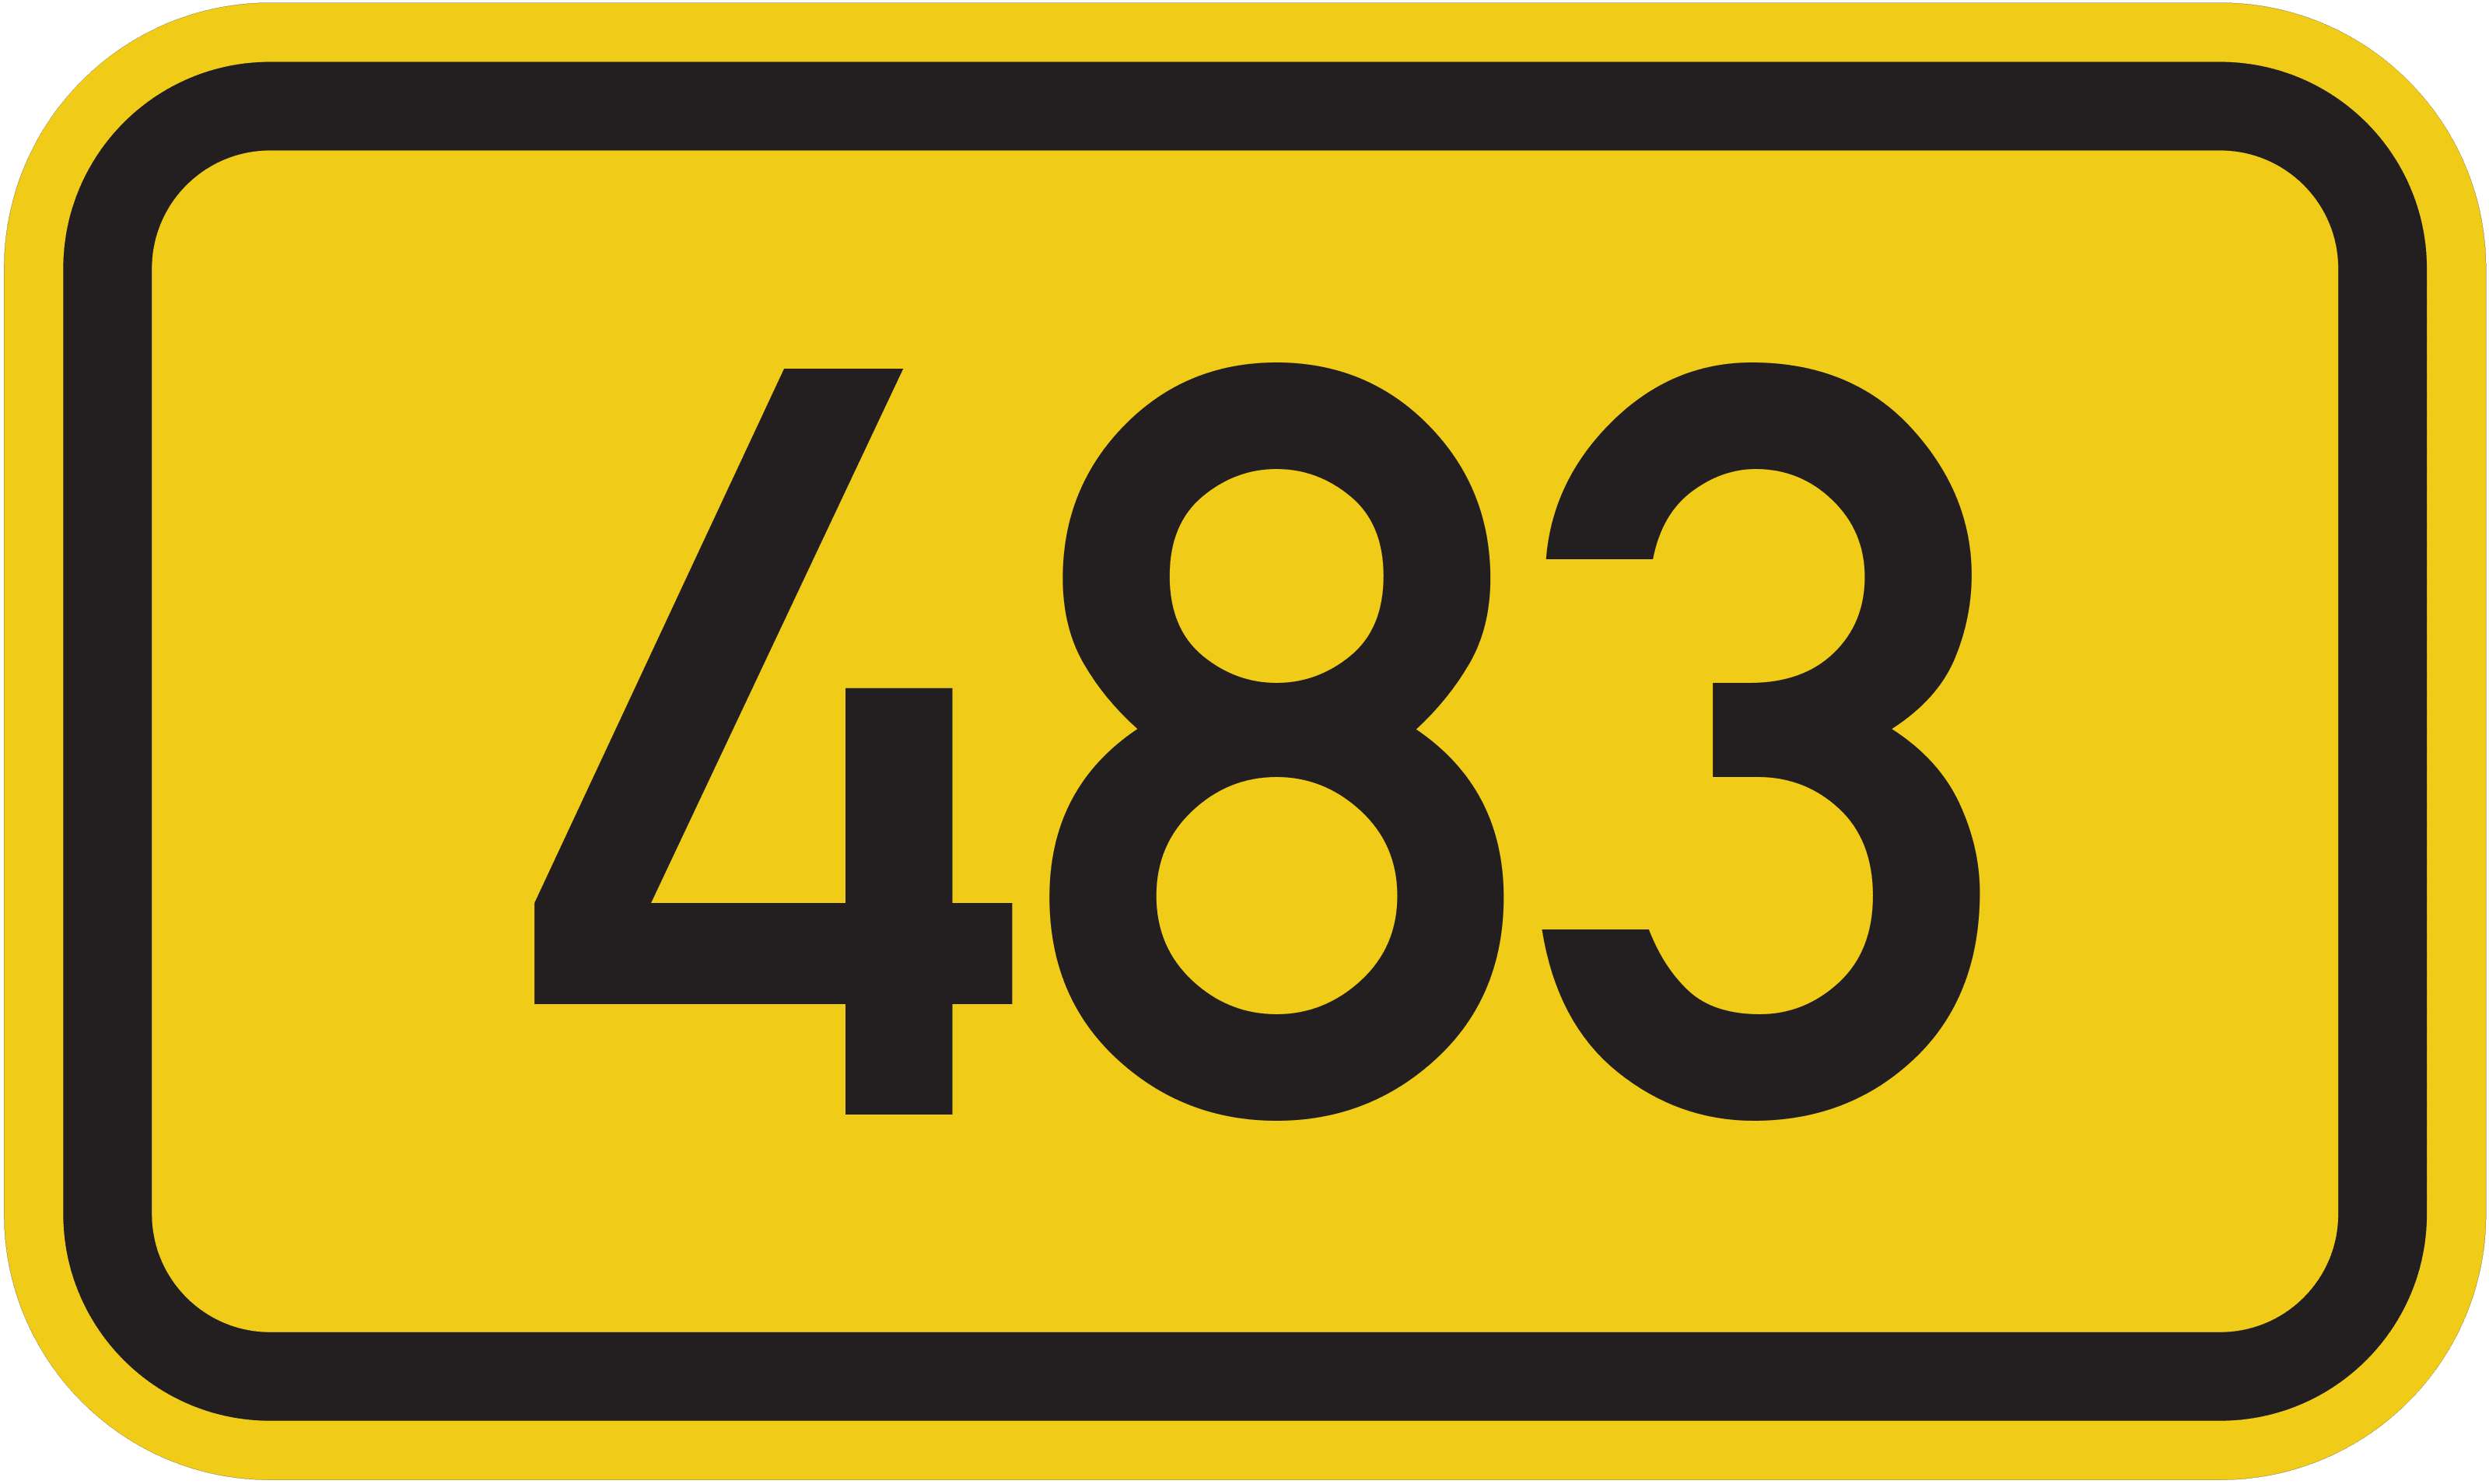 Bundesstraße B 483